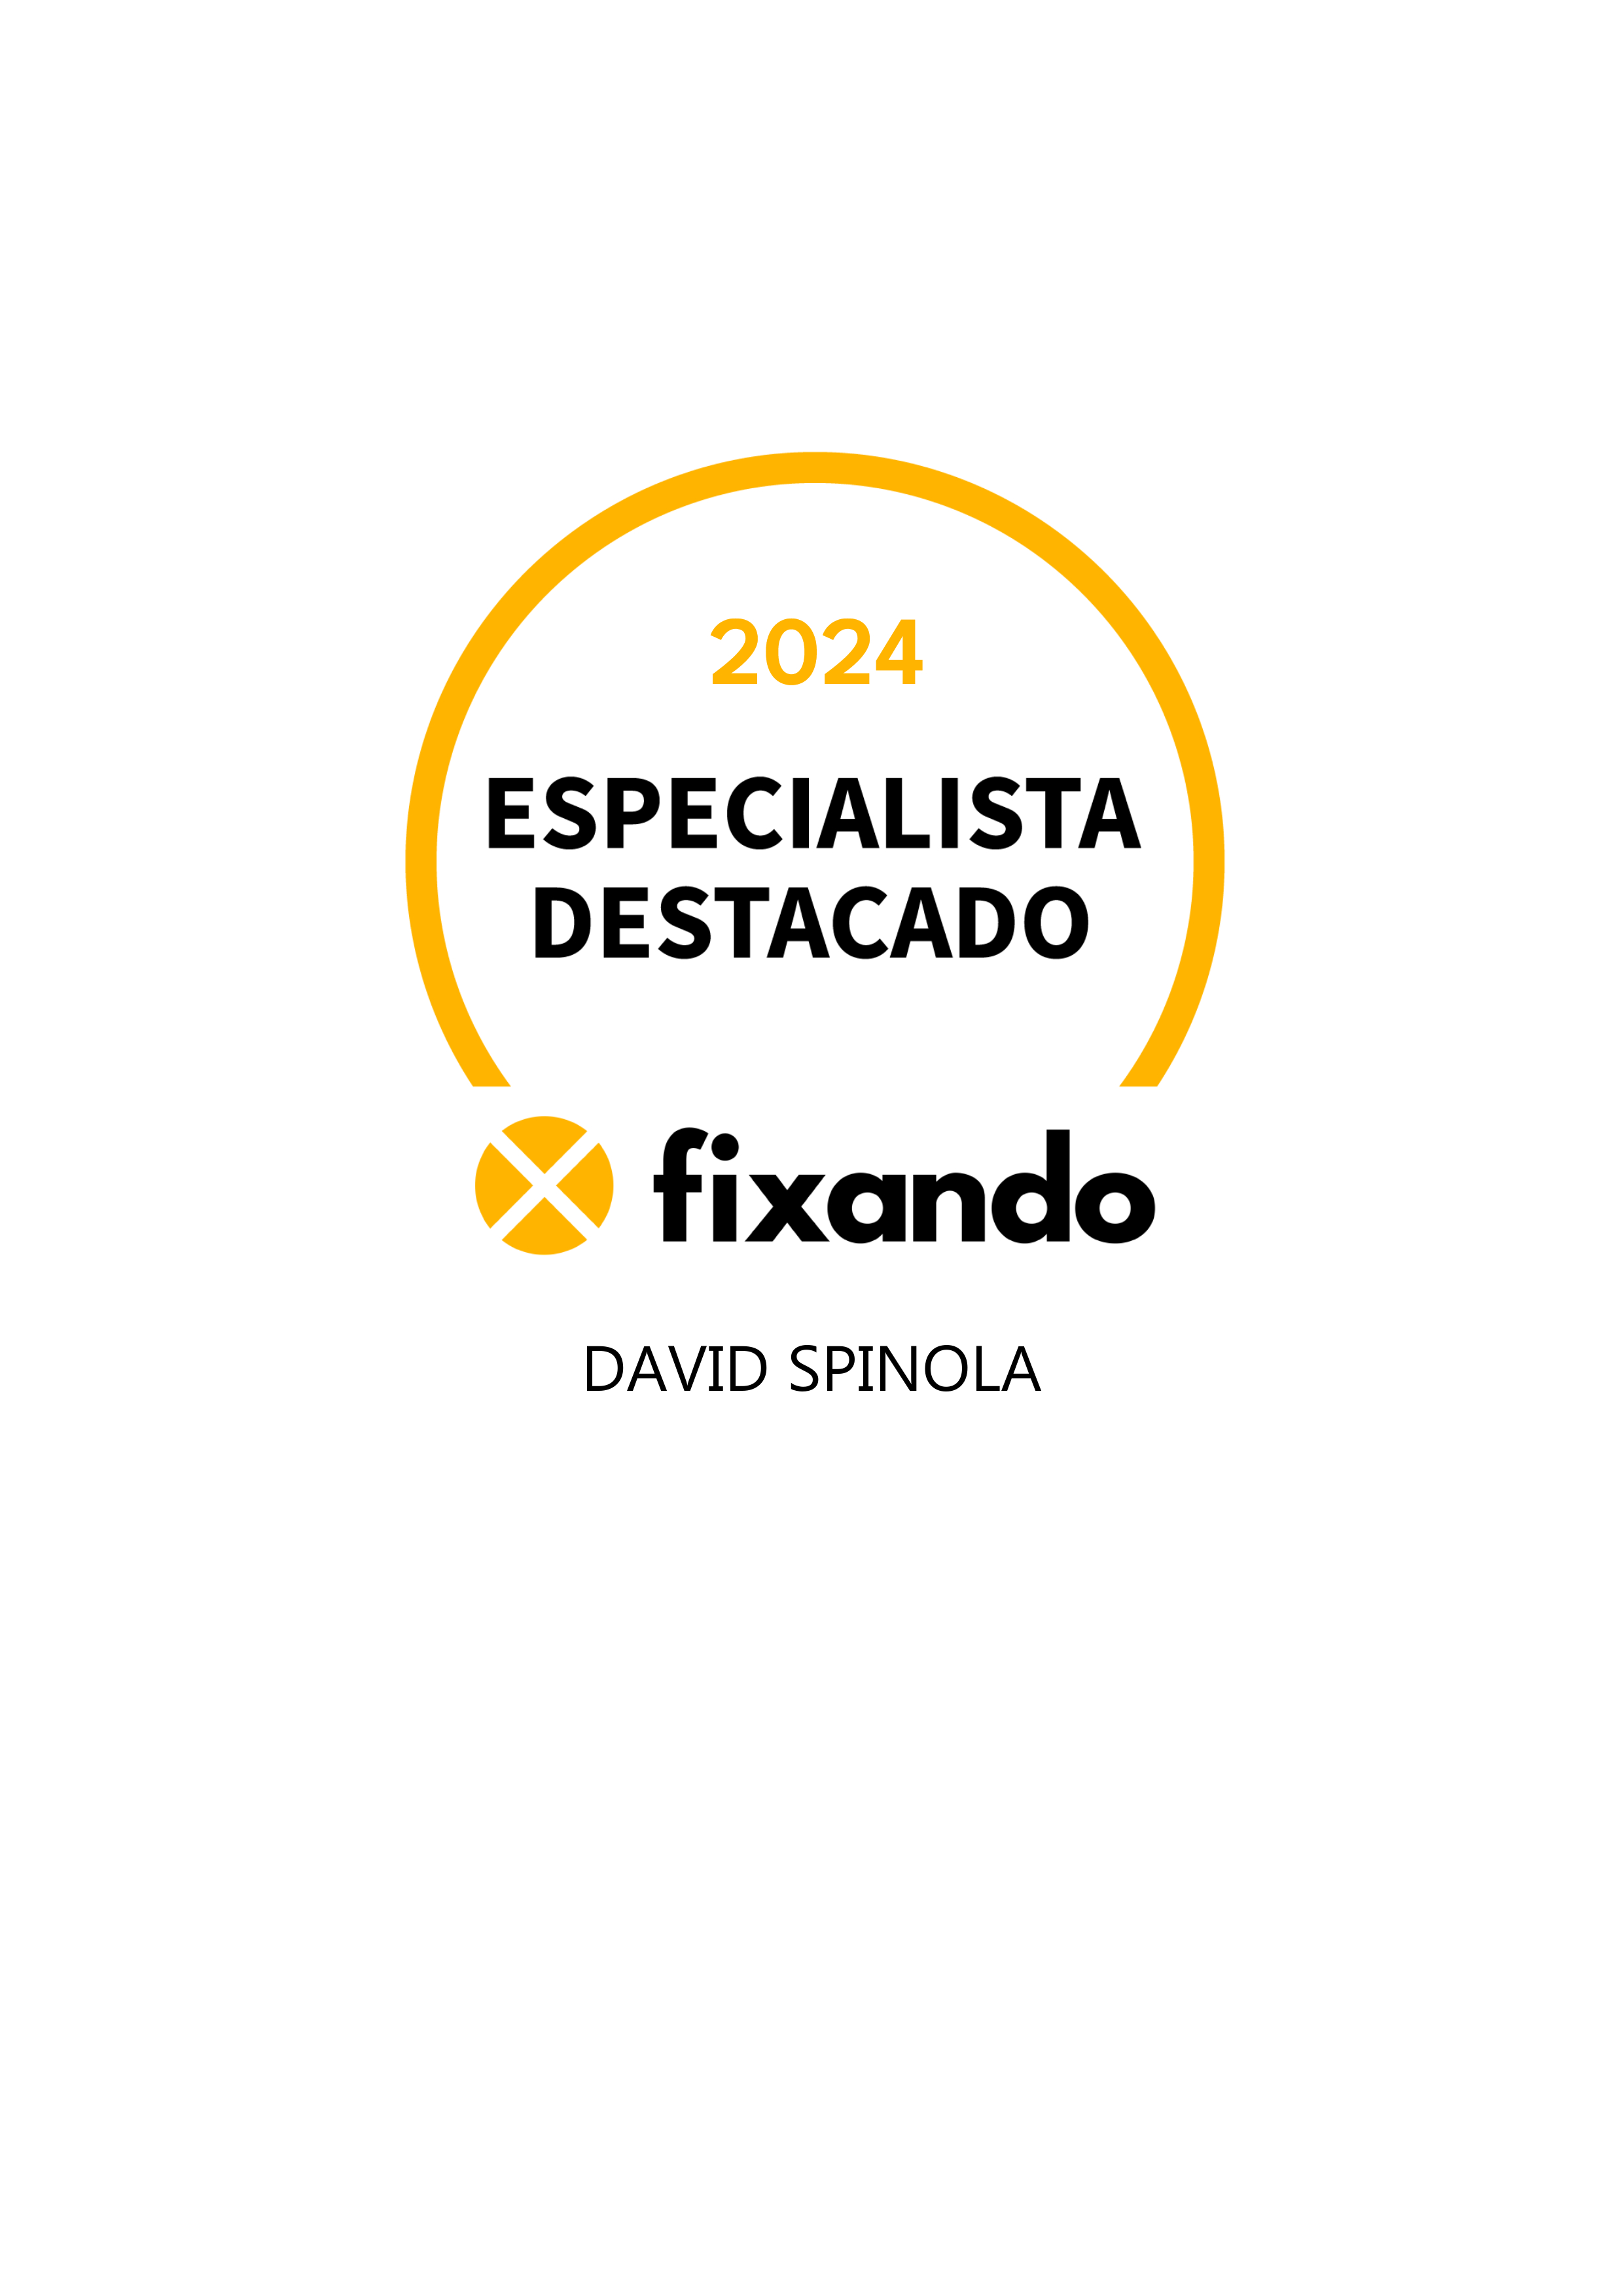 David Spinola - Lisboa - Treino Intervalado de Alta Intensidade (HIIT)